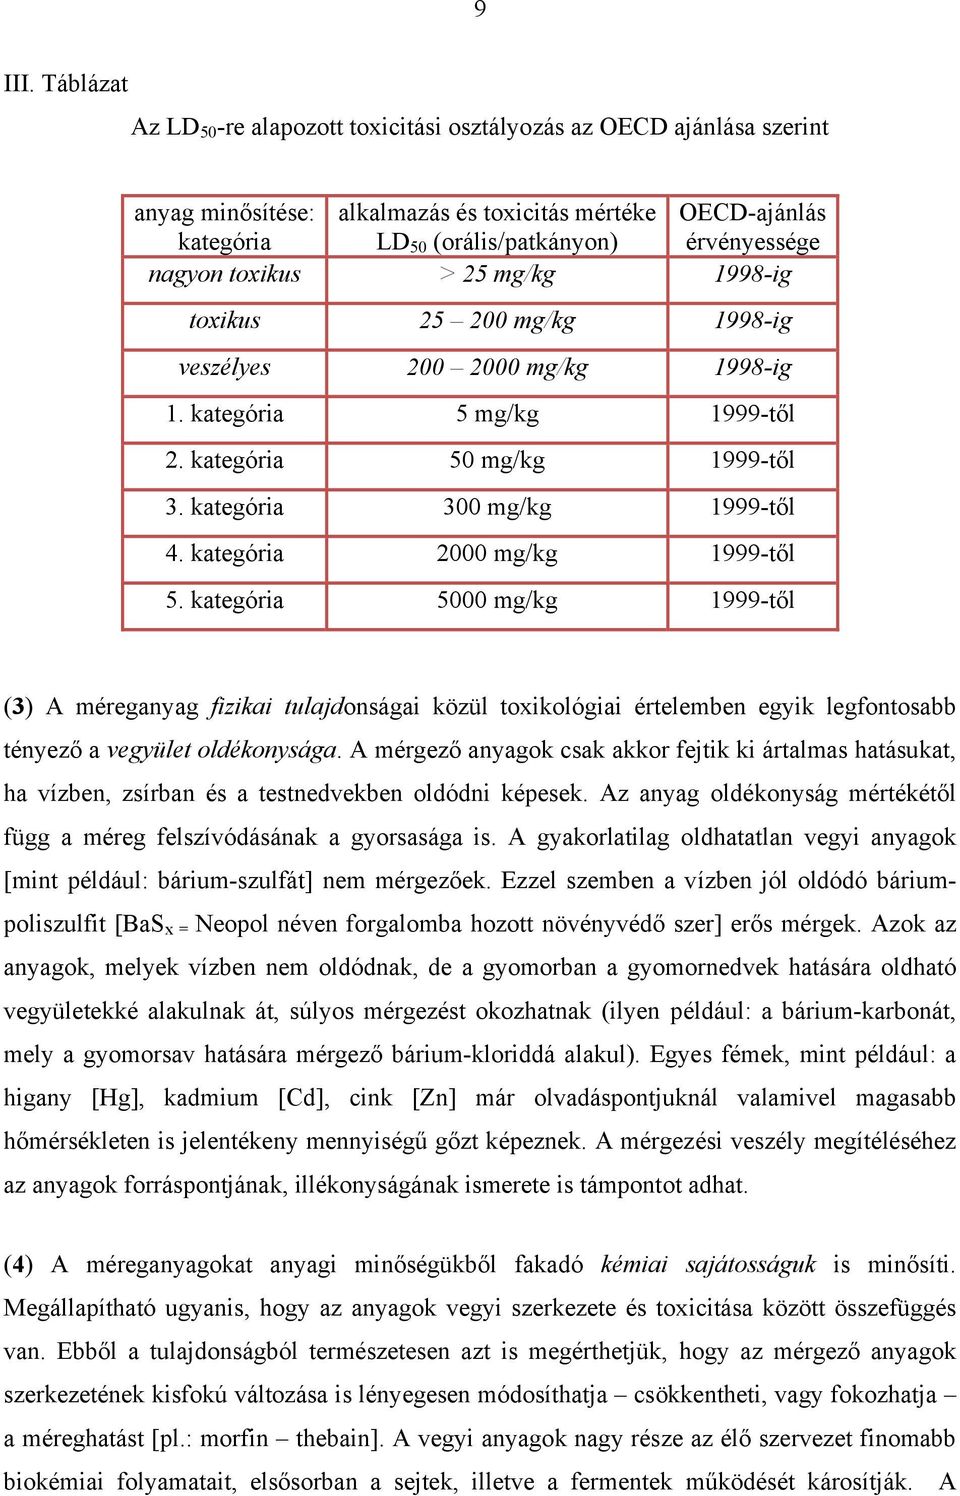 toxikus > 25 mg/kg 1998-ig toxikus 25 200 mg/kg 1998-ig veszélyes 200 2000 mg/kg 1998-ig 1. kategória 5 mg/kg 1999-től 2. kategória 50 mg/kg 1999-től 3. kategória 300 mg/kg 1999-től 4.